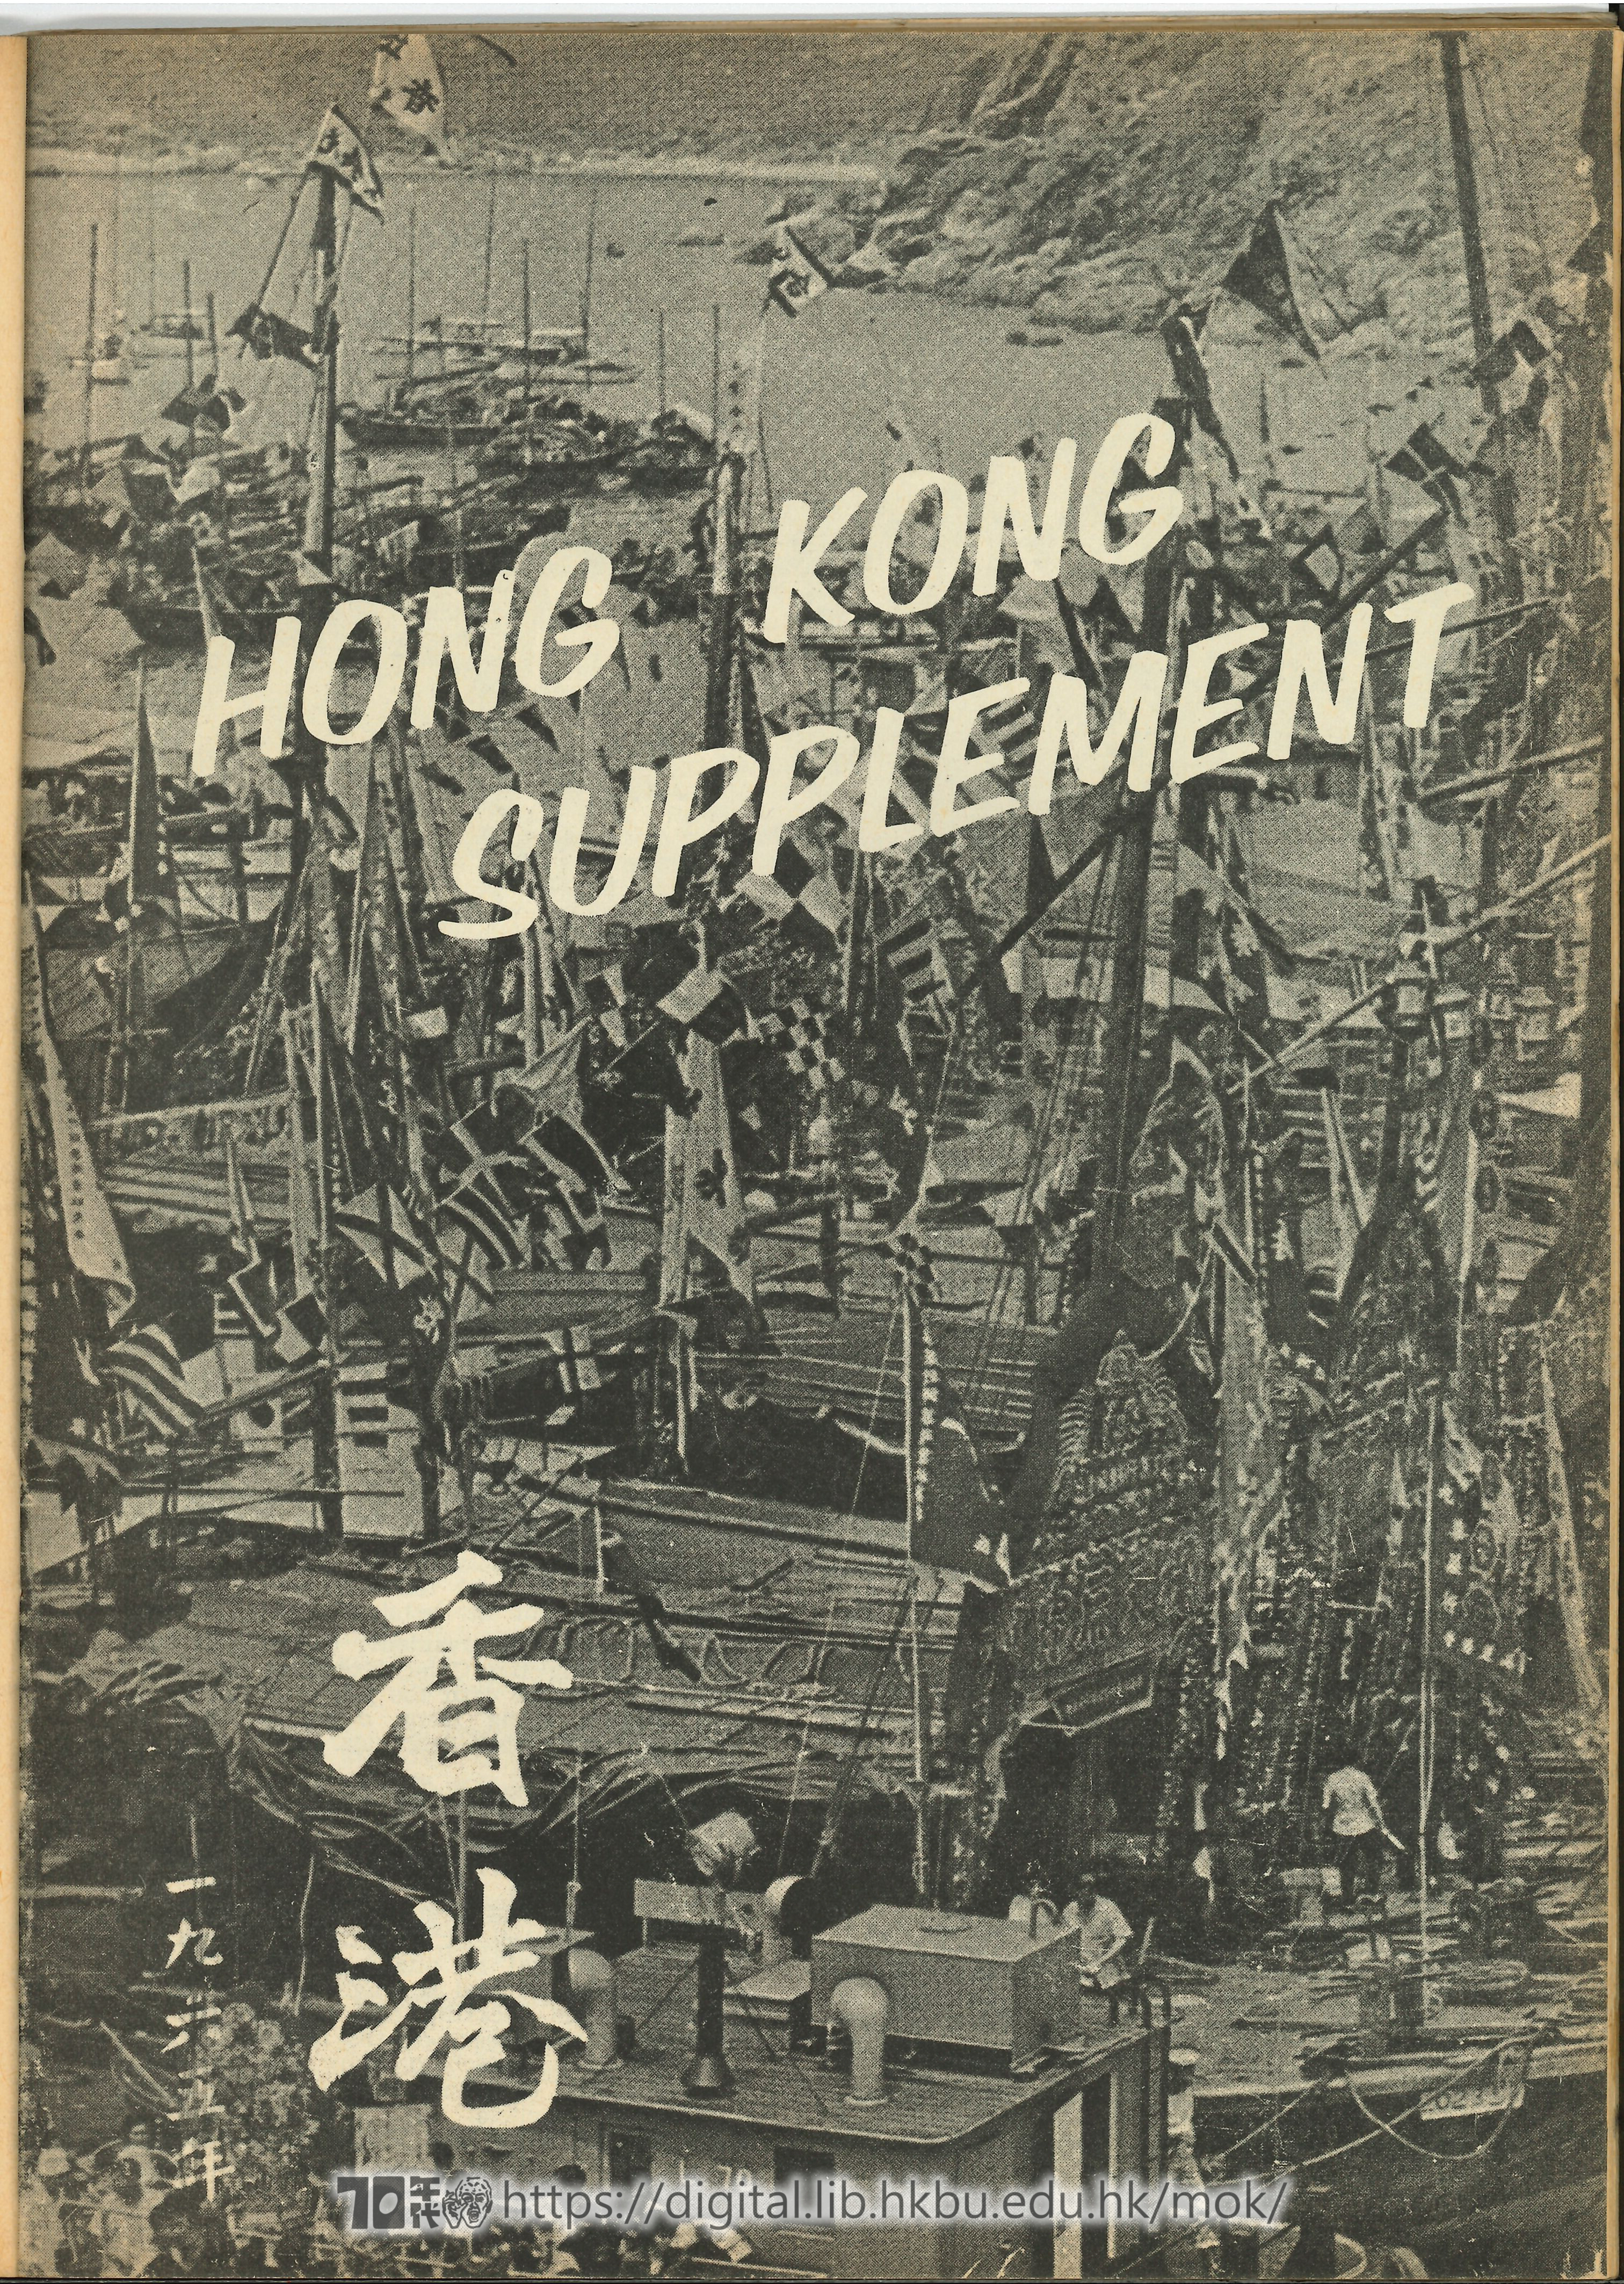   Hong Kong Supplement  